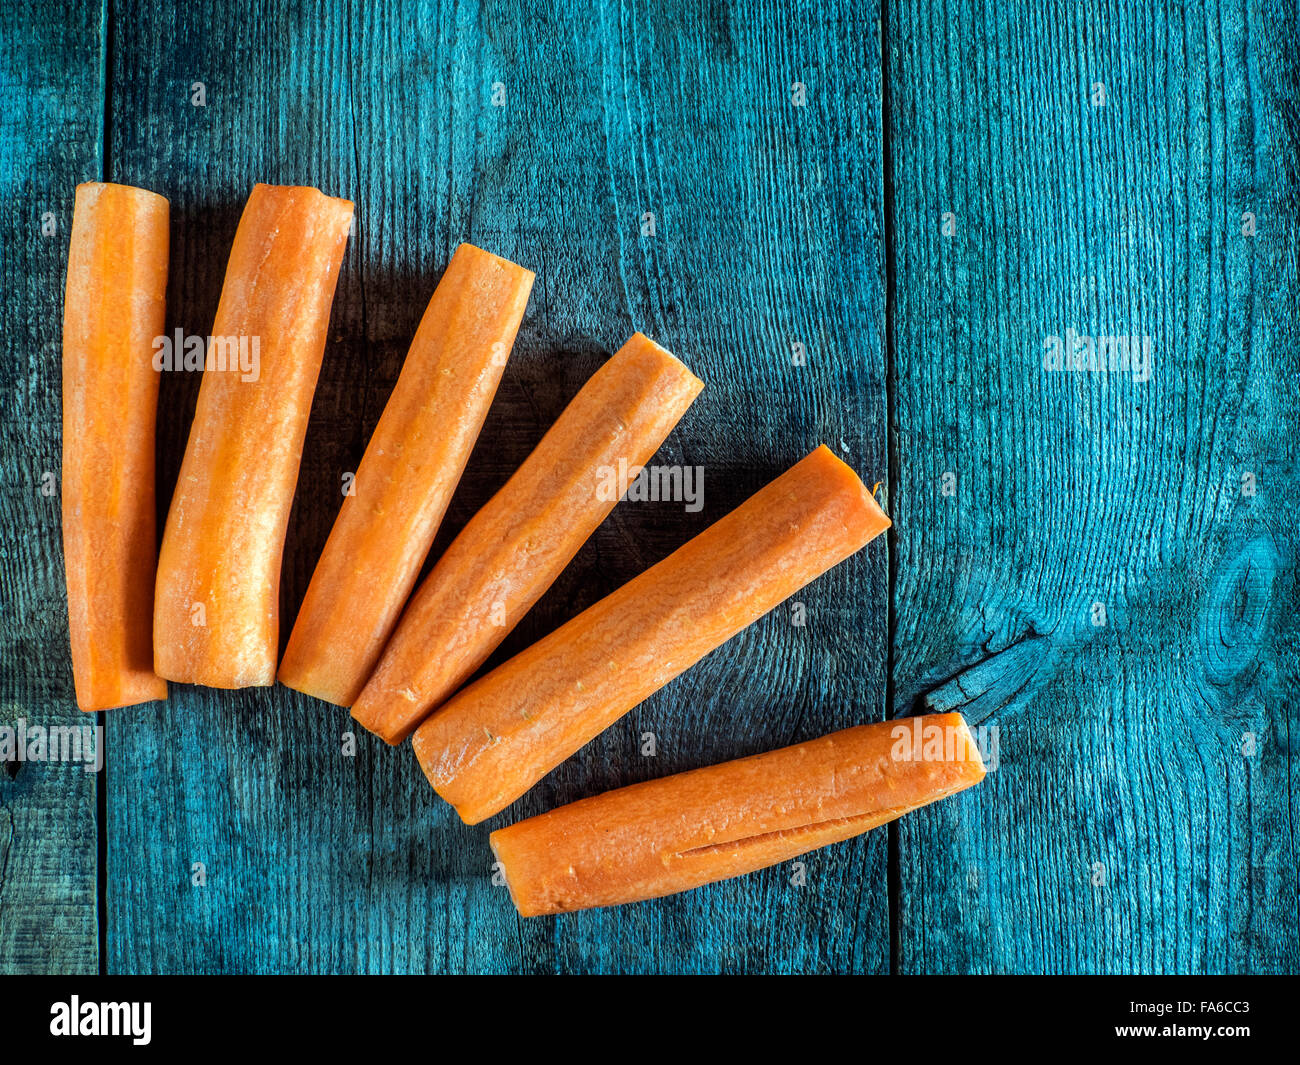 Vue de dessus de carotte des matraques sur une table en bois Banque D'Images